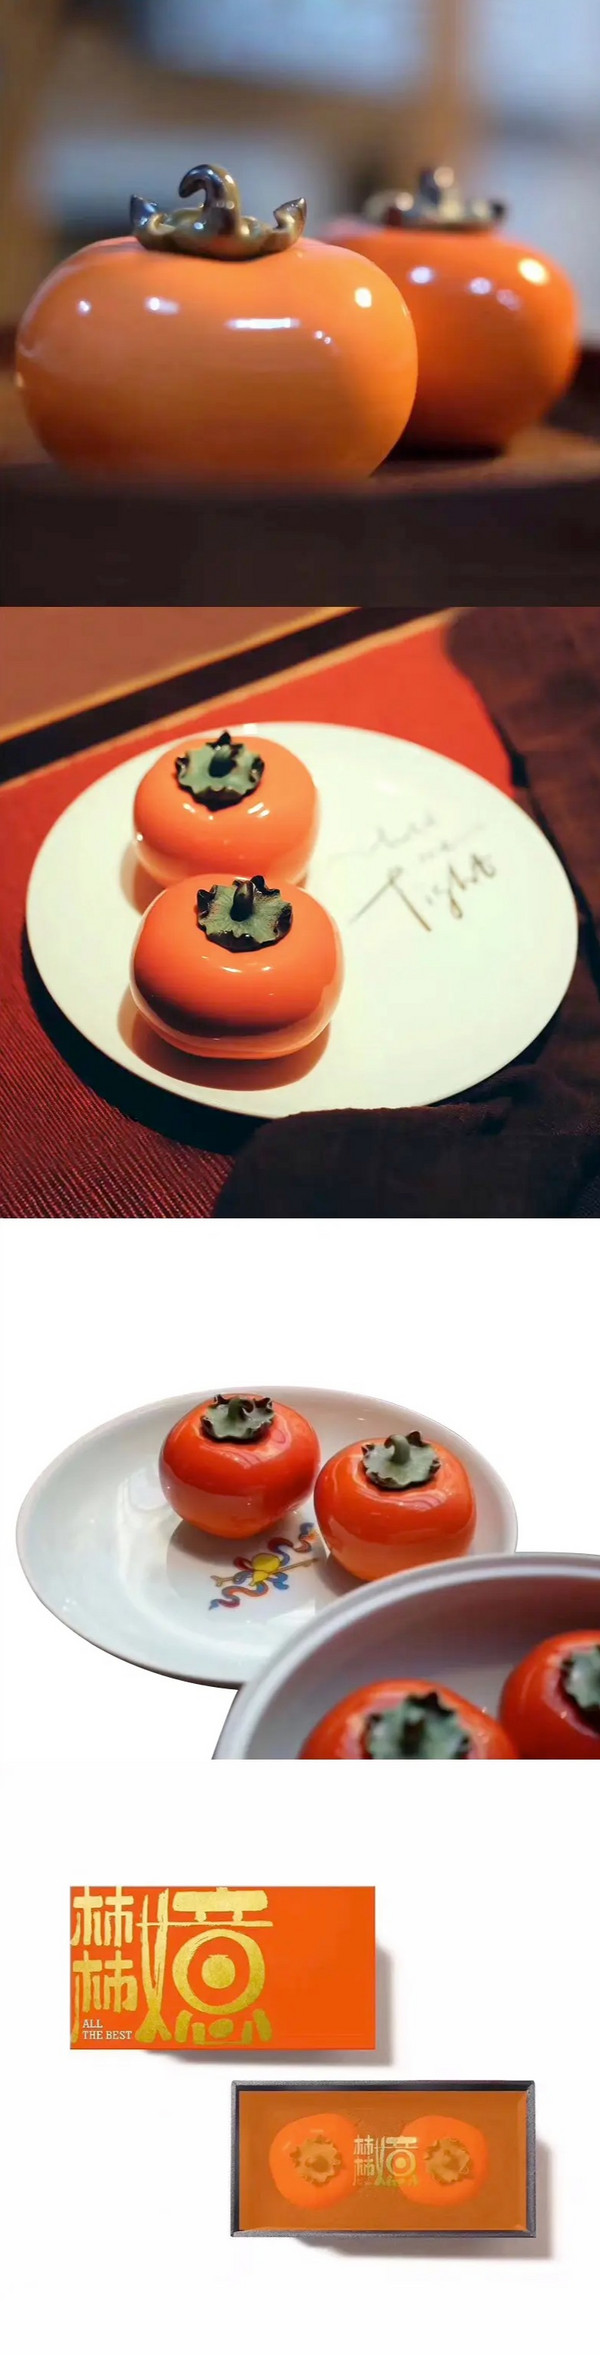 构得艺术 柿柿如意陶瓷彩釉迷你雕塑桌面摆件